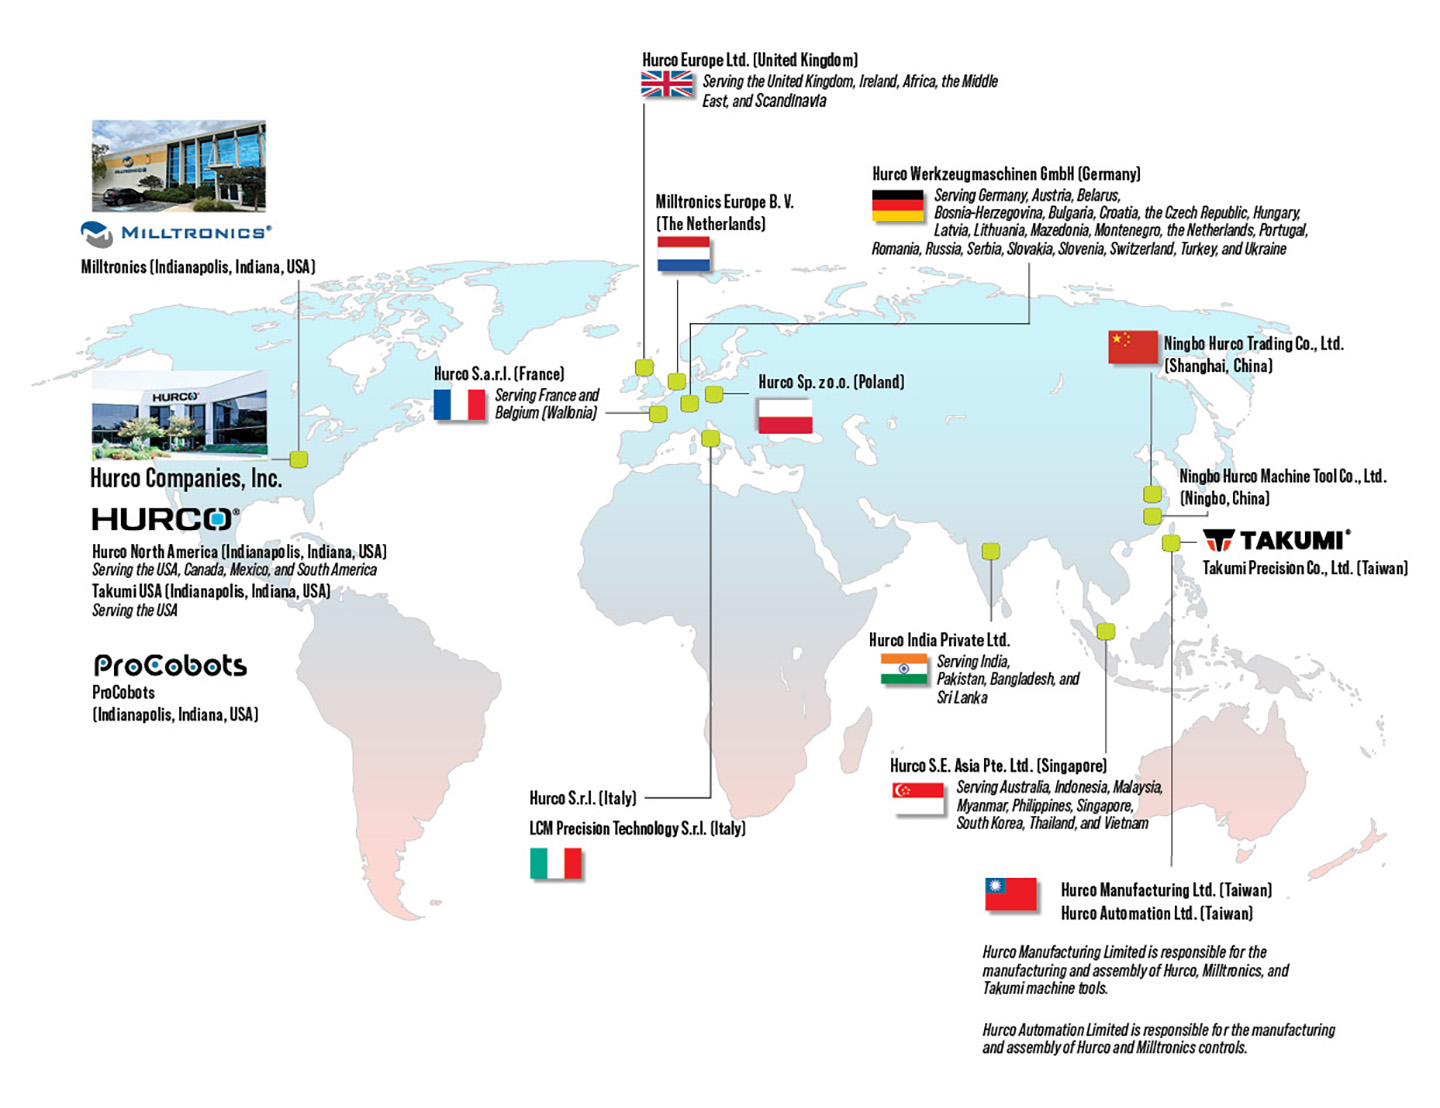 Hurco Global Locations